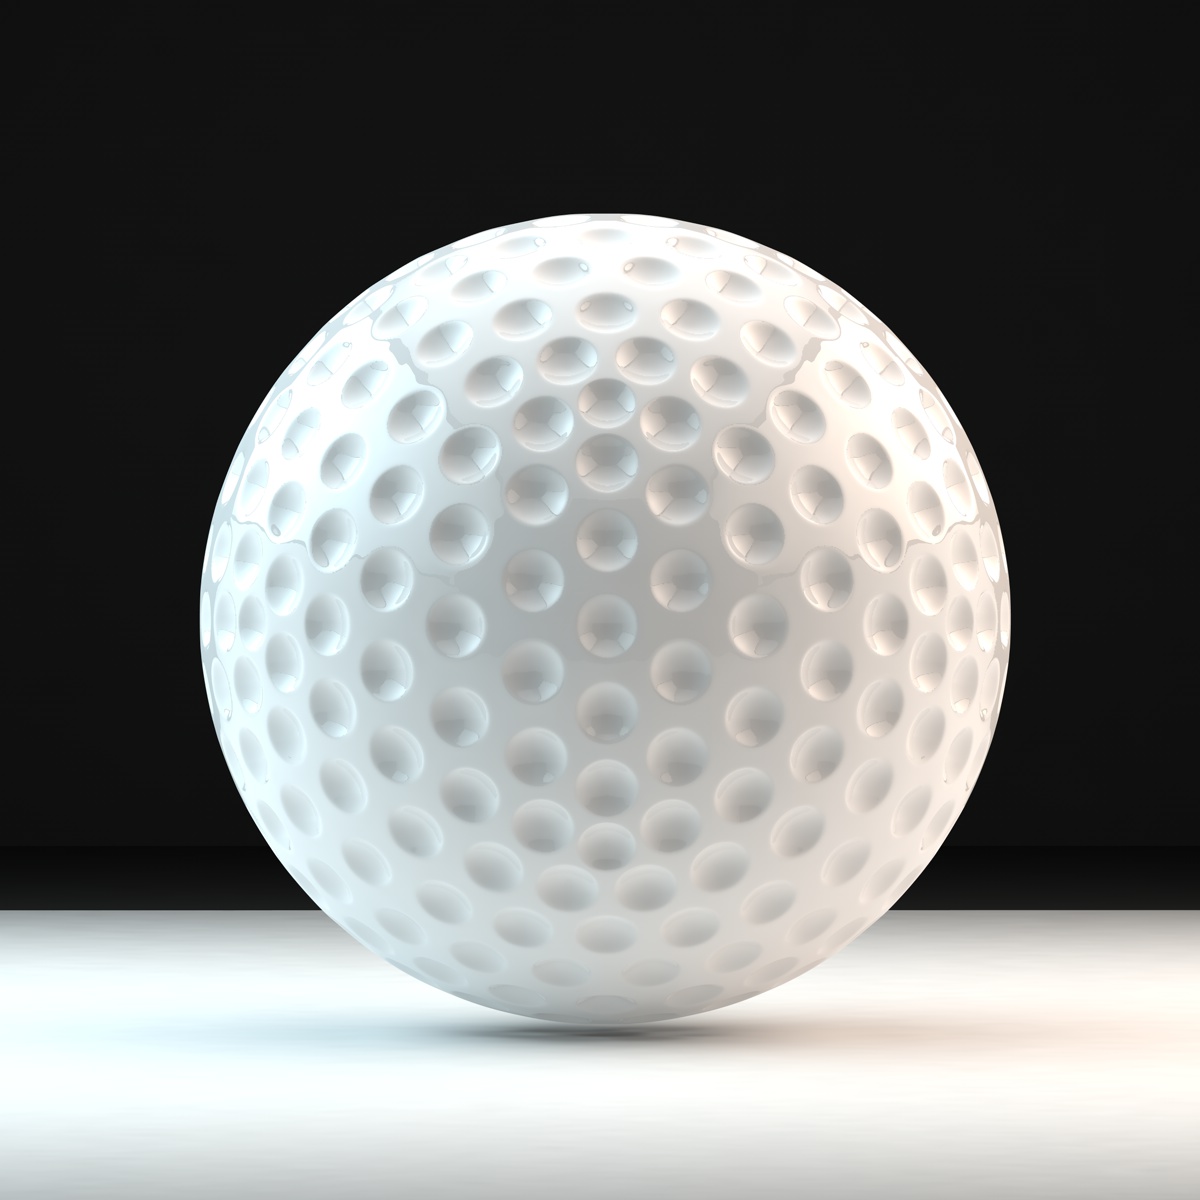 3 d balls. Гольф бол мяч. Шарик для гольфа. Мяч для гольфа 3д модель. Мяч для гольыа на подставк.